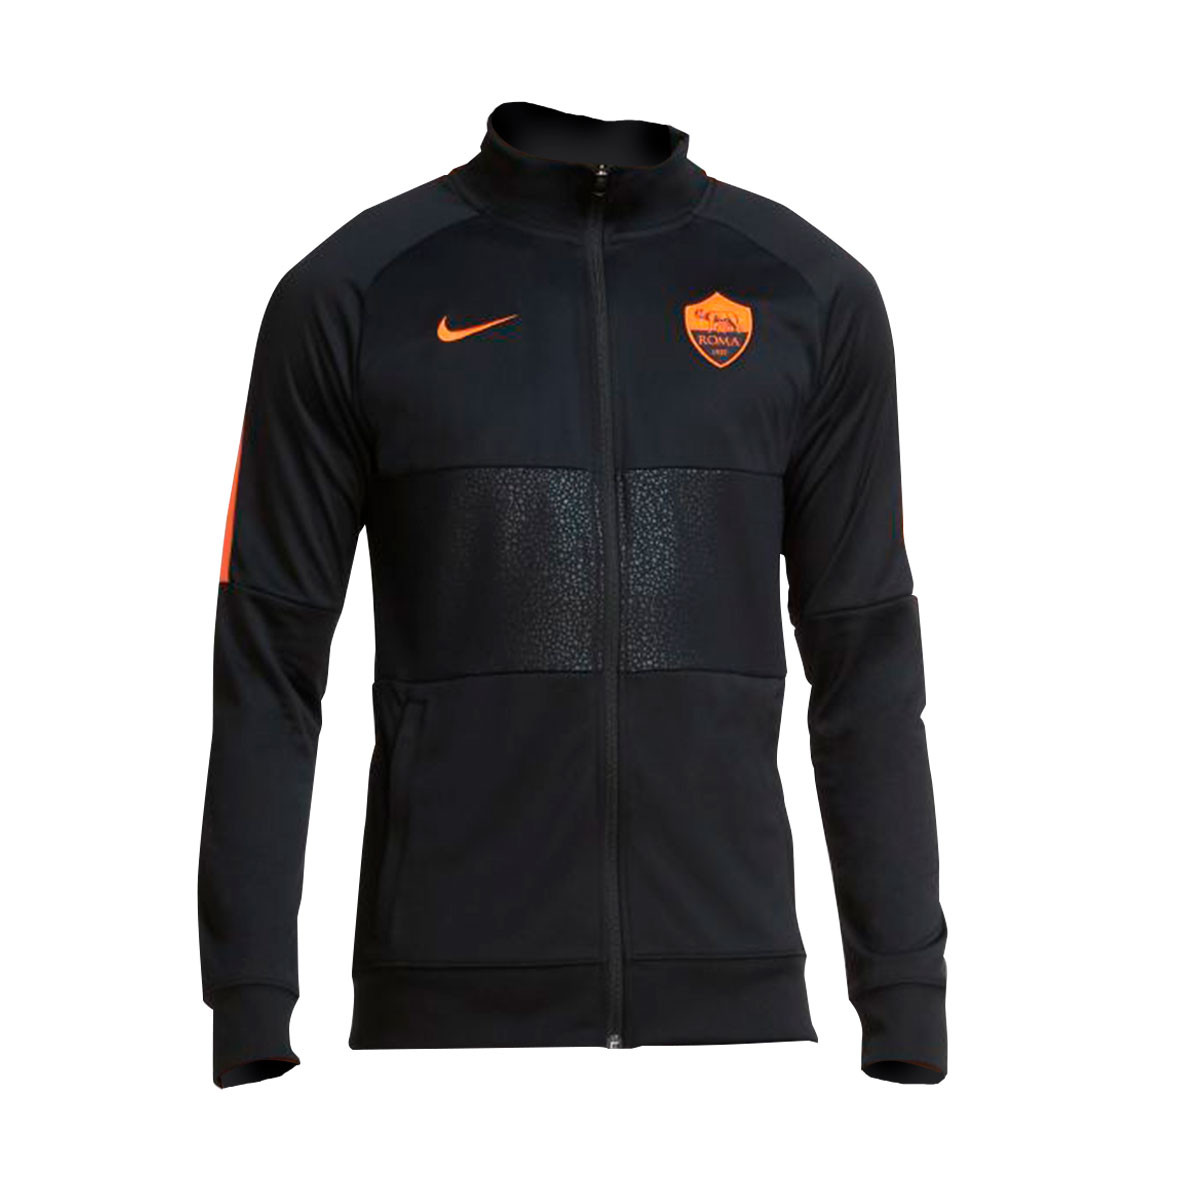 Jacket Nike As Roma I96 Anthem Cl 21 Black Safety Orange Futbol Emotion